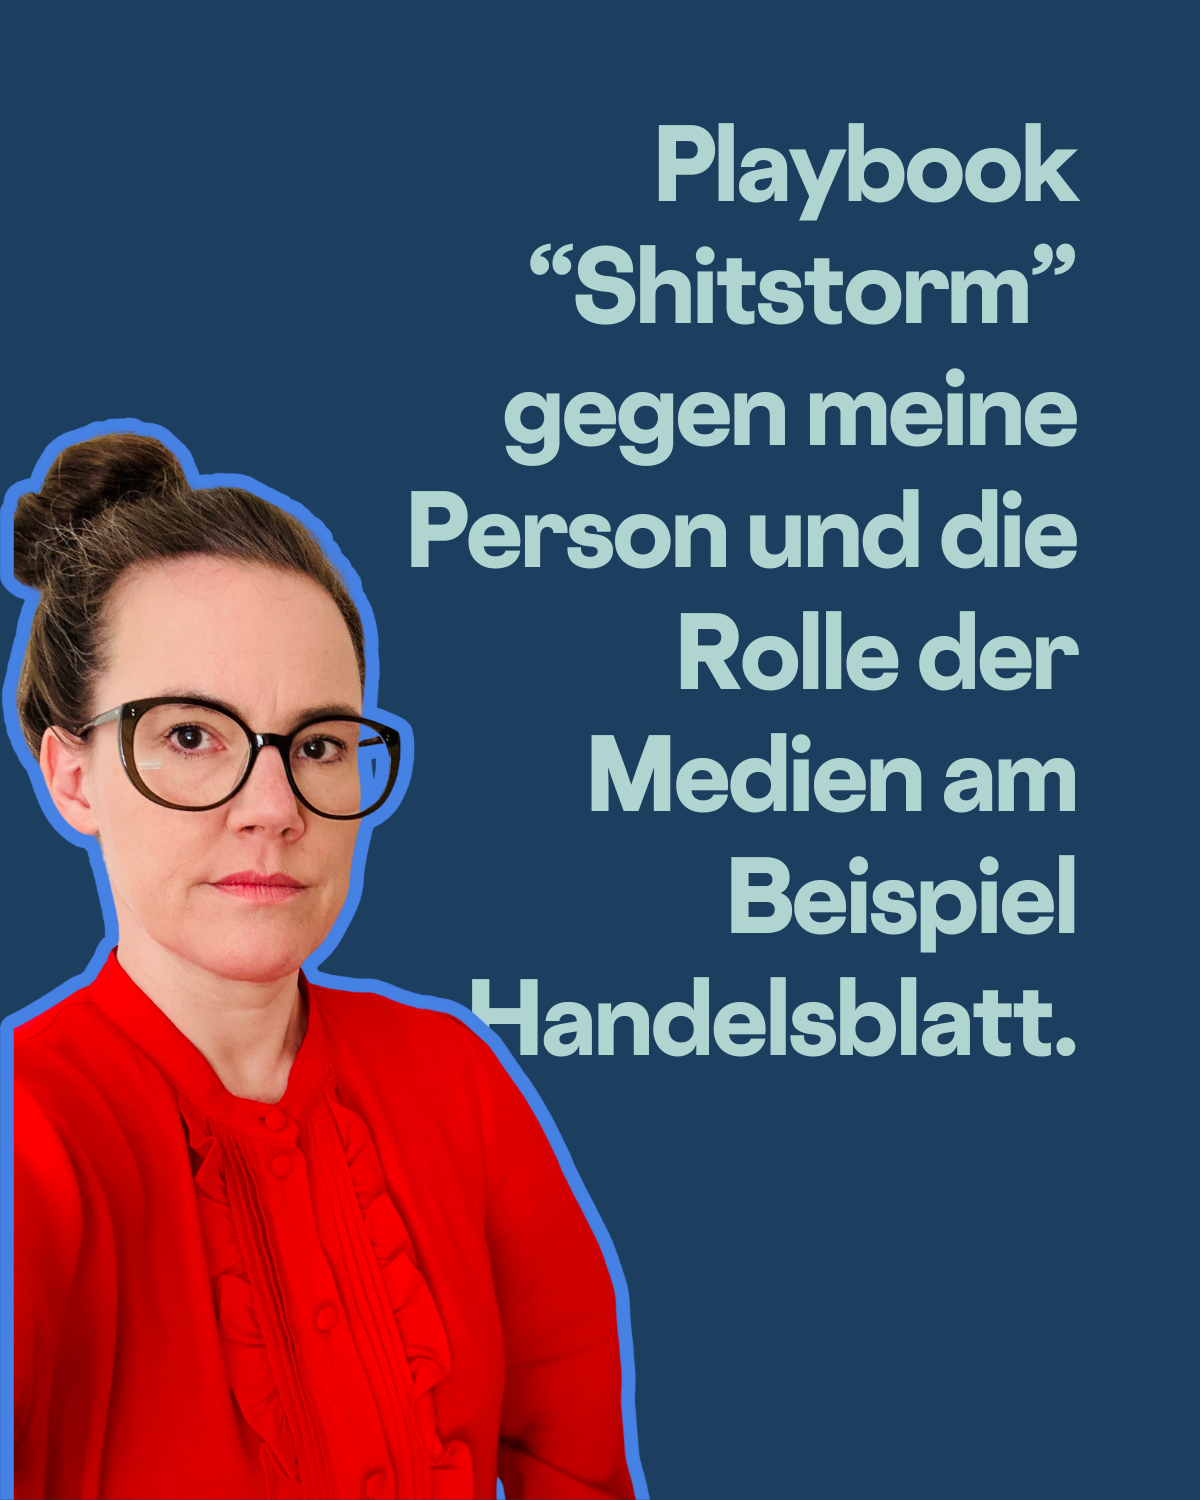 Es ist wieder Showtime! Playbook Shitstorm gegen Katja Diehl und die Rolle der Medien.